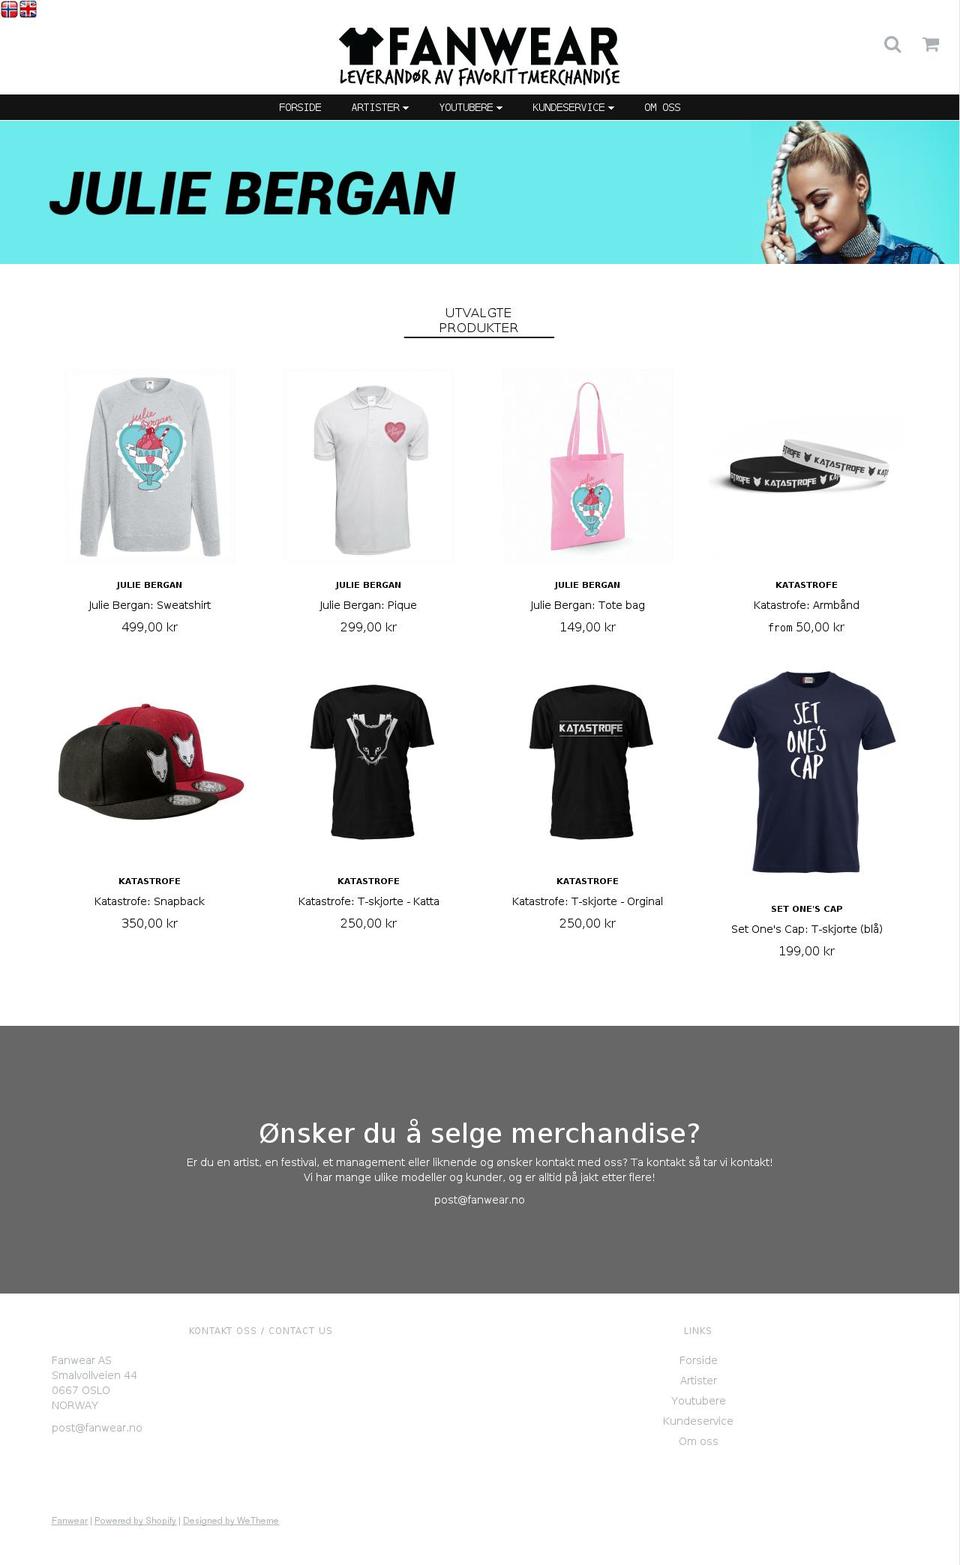 fanwear.no shopify website screenshot